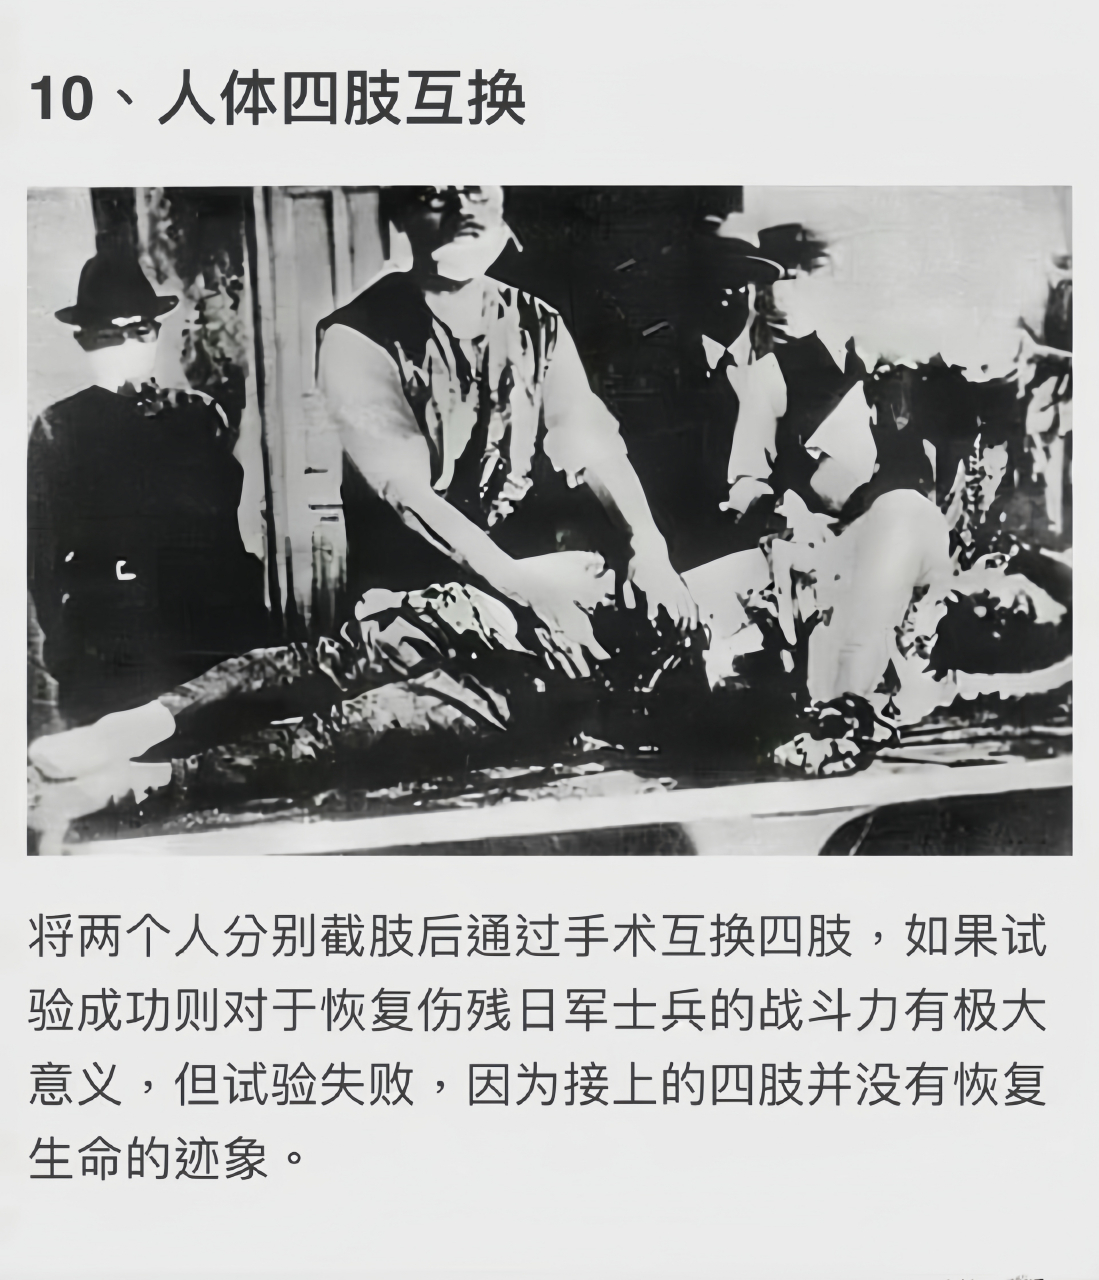 日本731部队事件图片